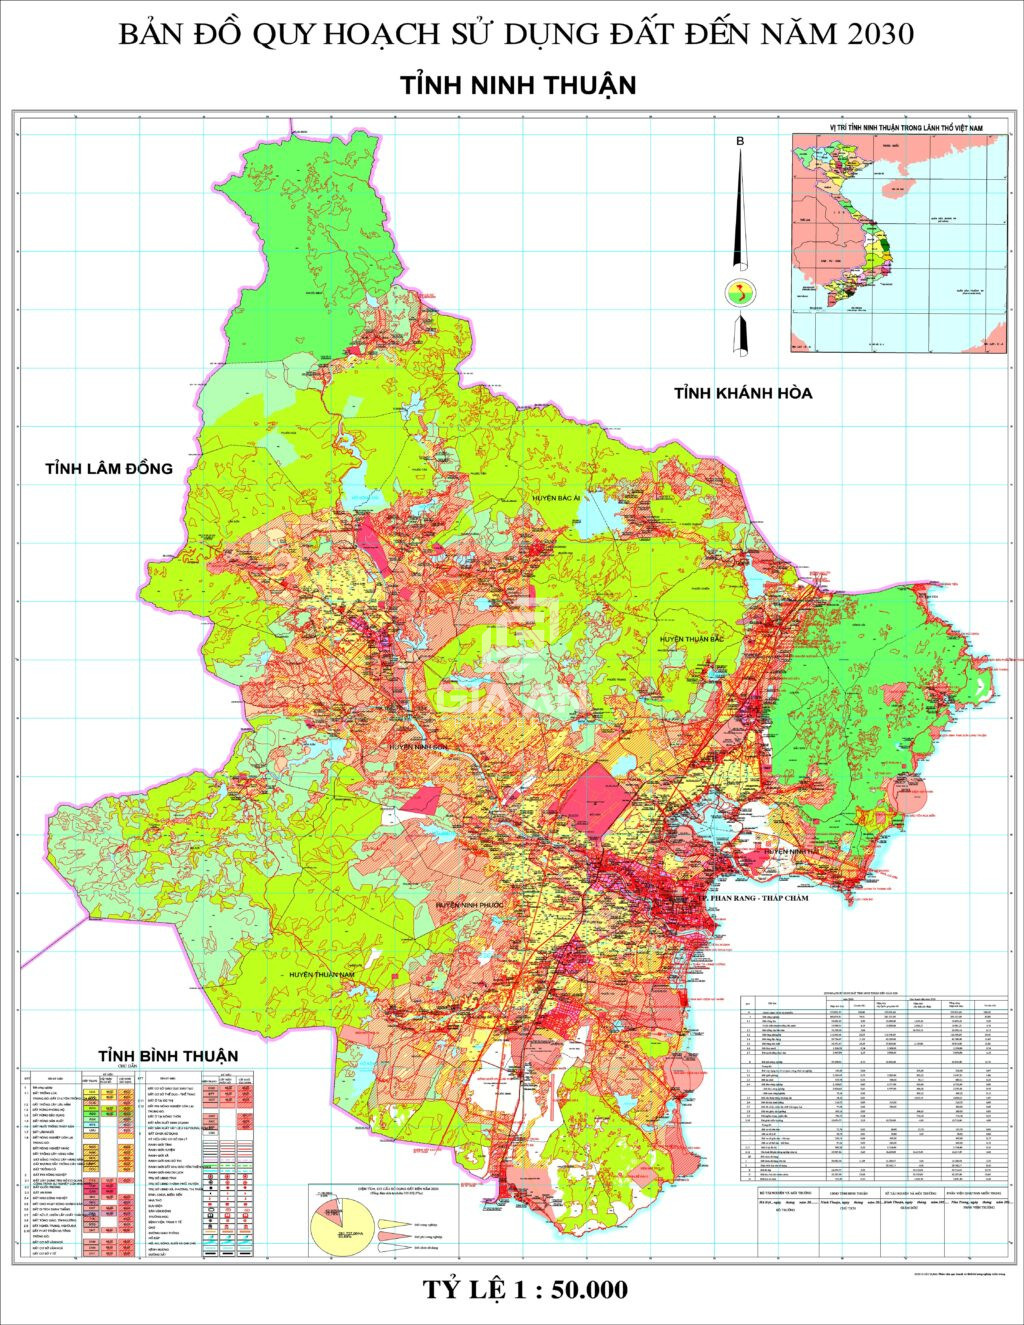 Bản đồ quy hoạch tỉnh Ninh Thuận